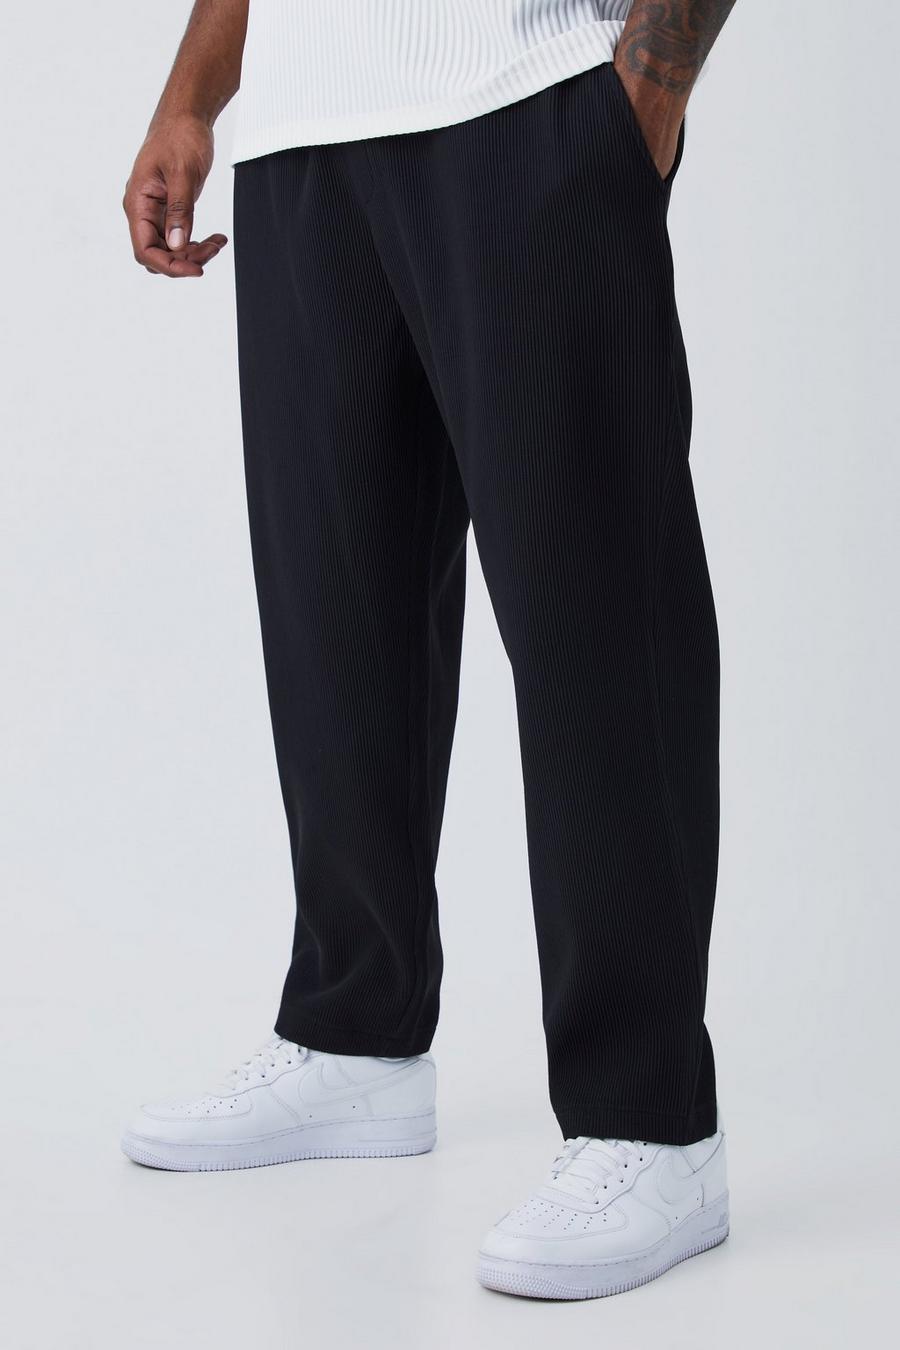 Grande taille - Pantalon fuselé plissé, Black noir